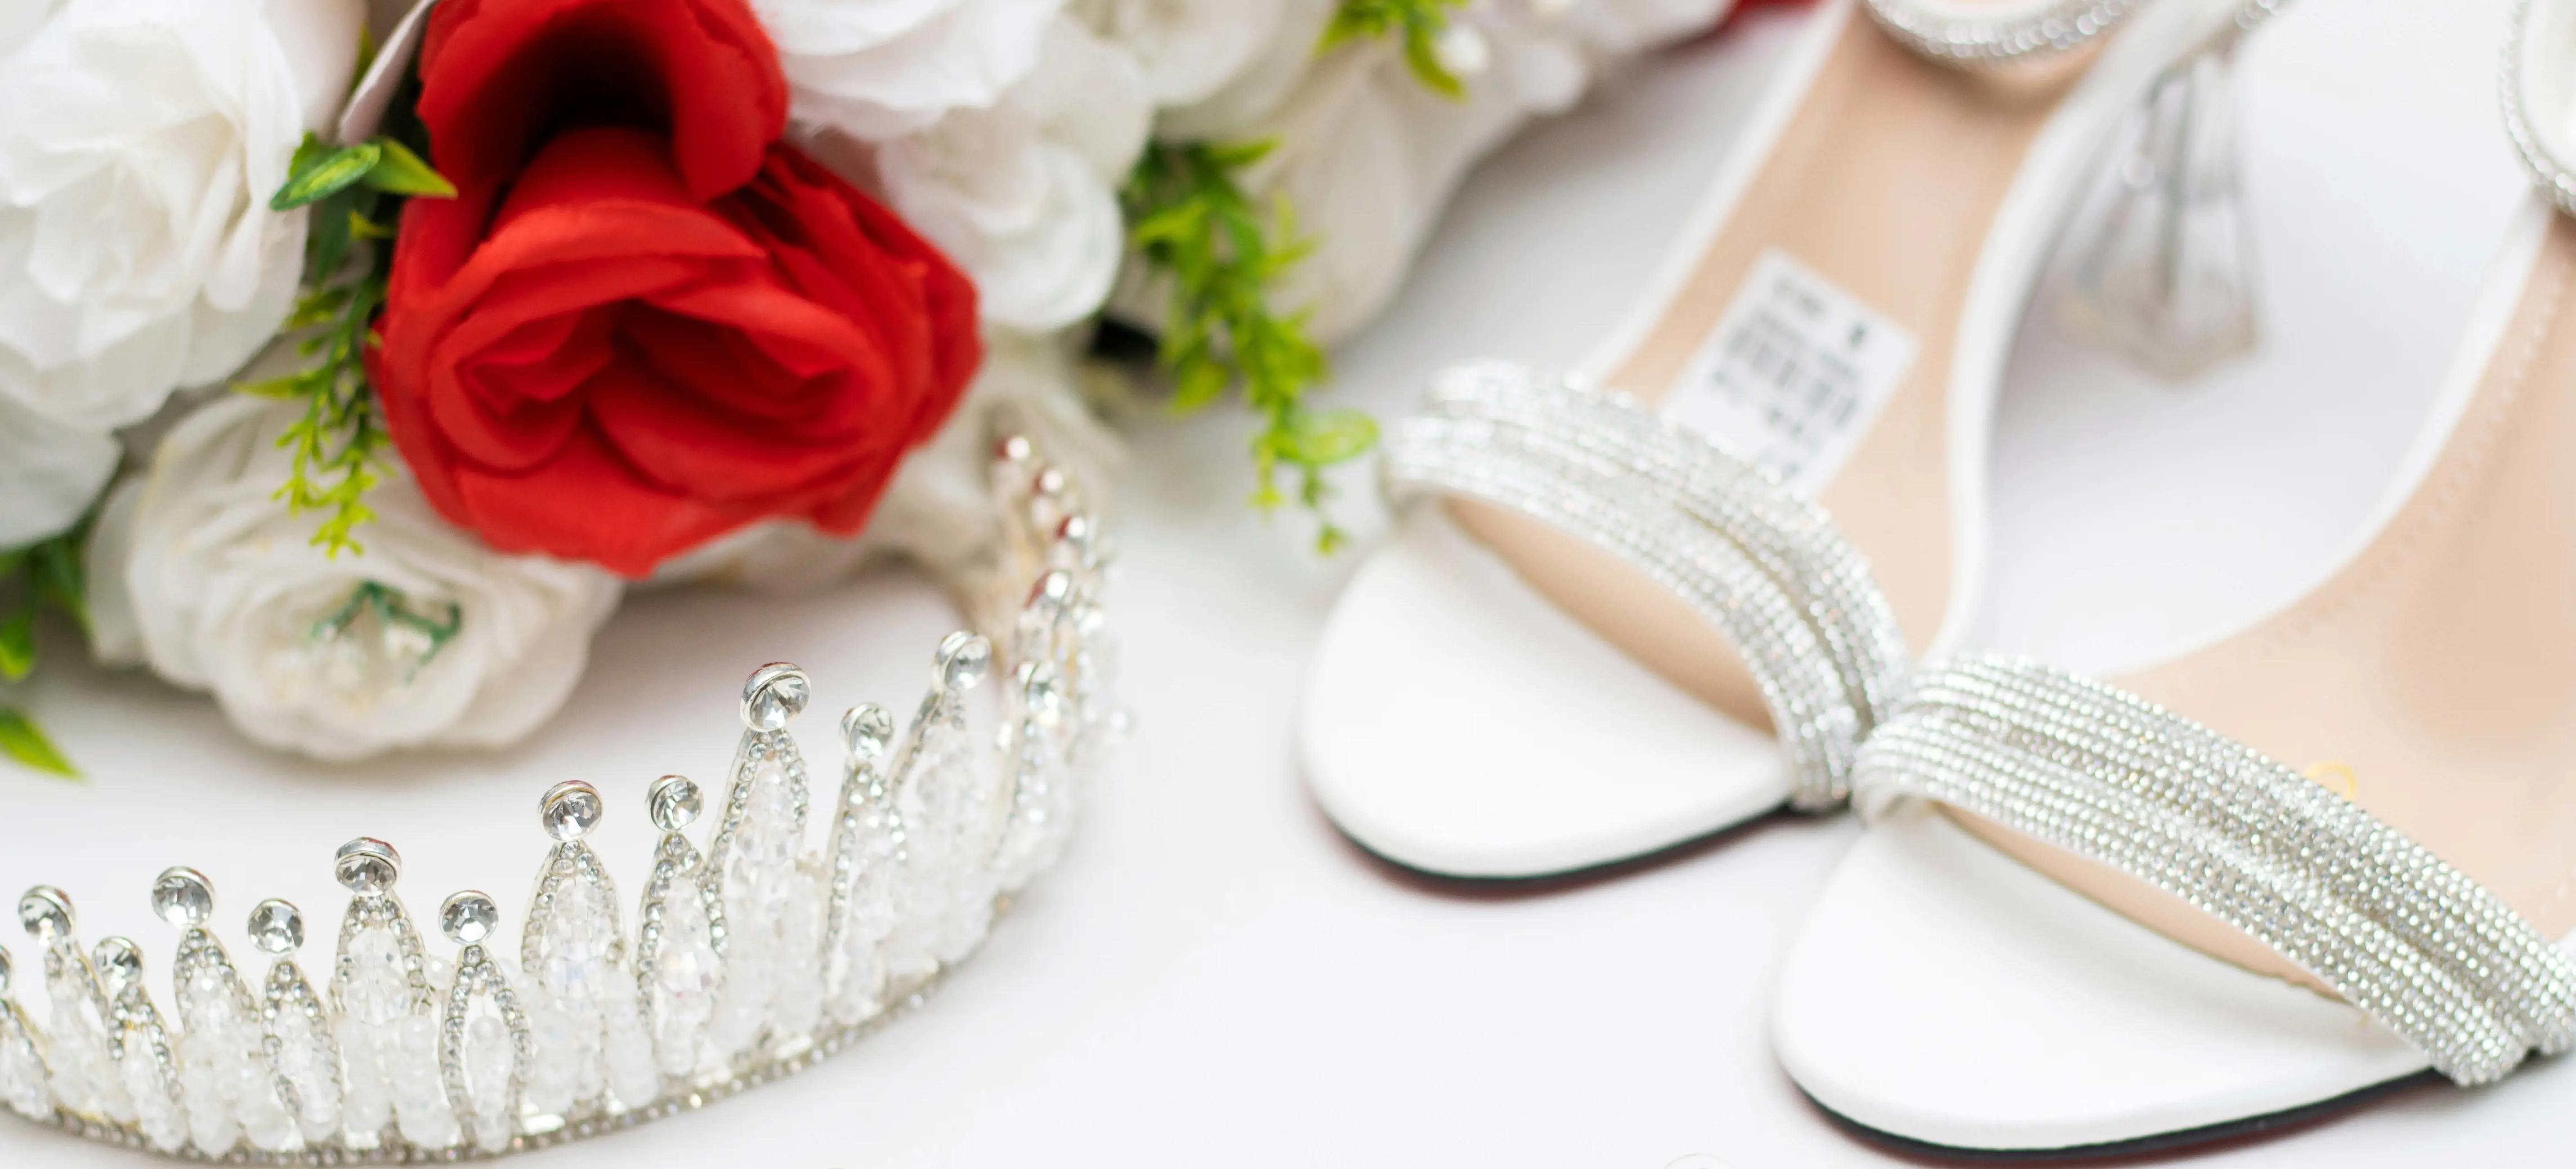 ConfettiRain Bridal accessories collection